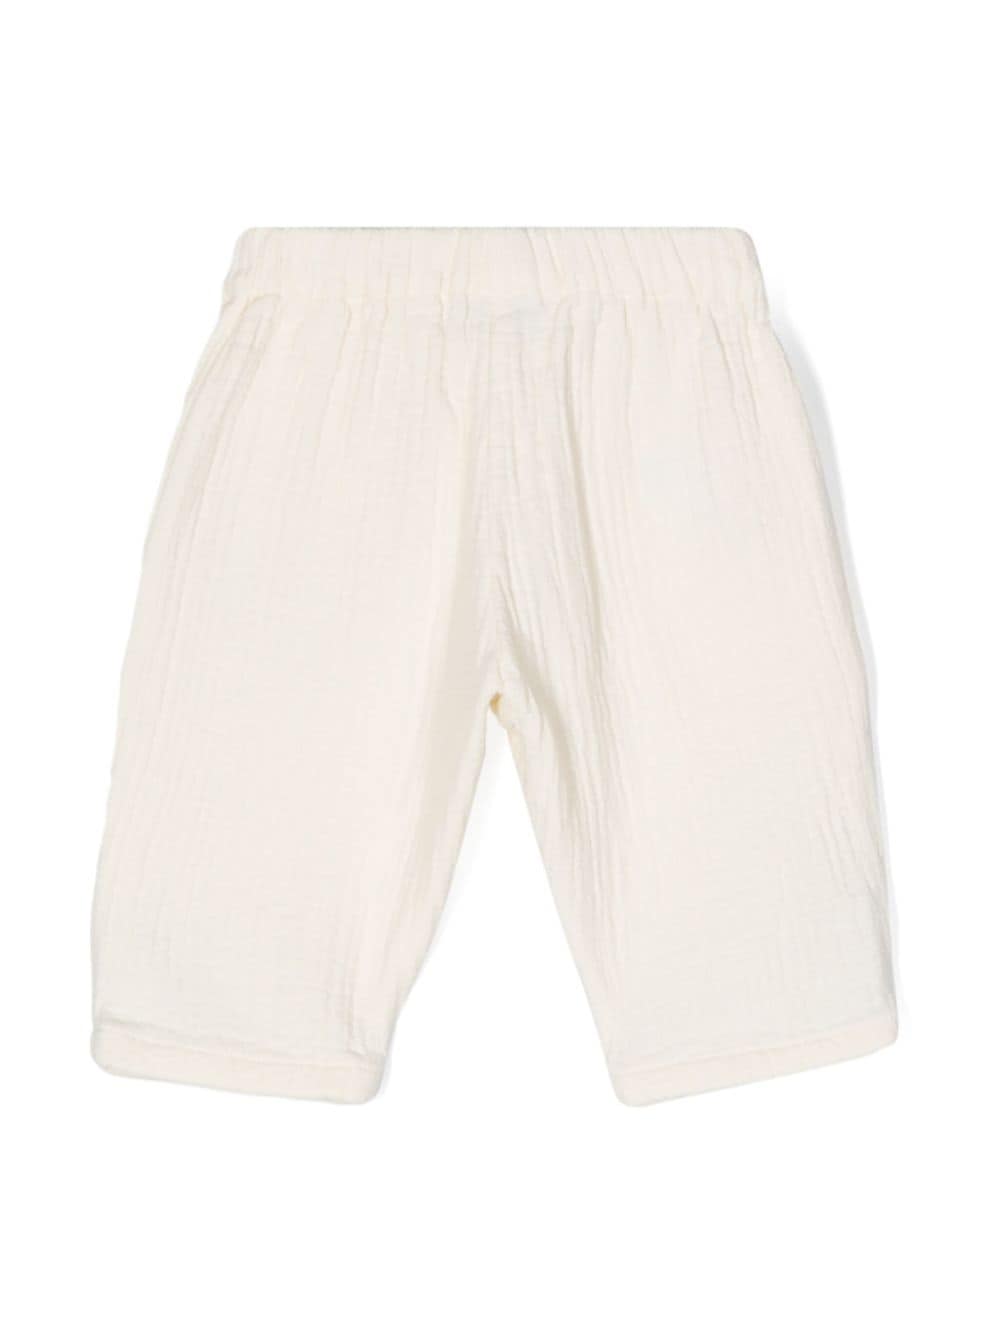 Pantalon nouveau-né blanc/multicolore